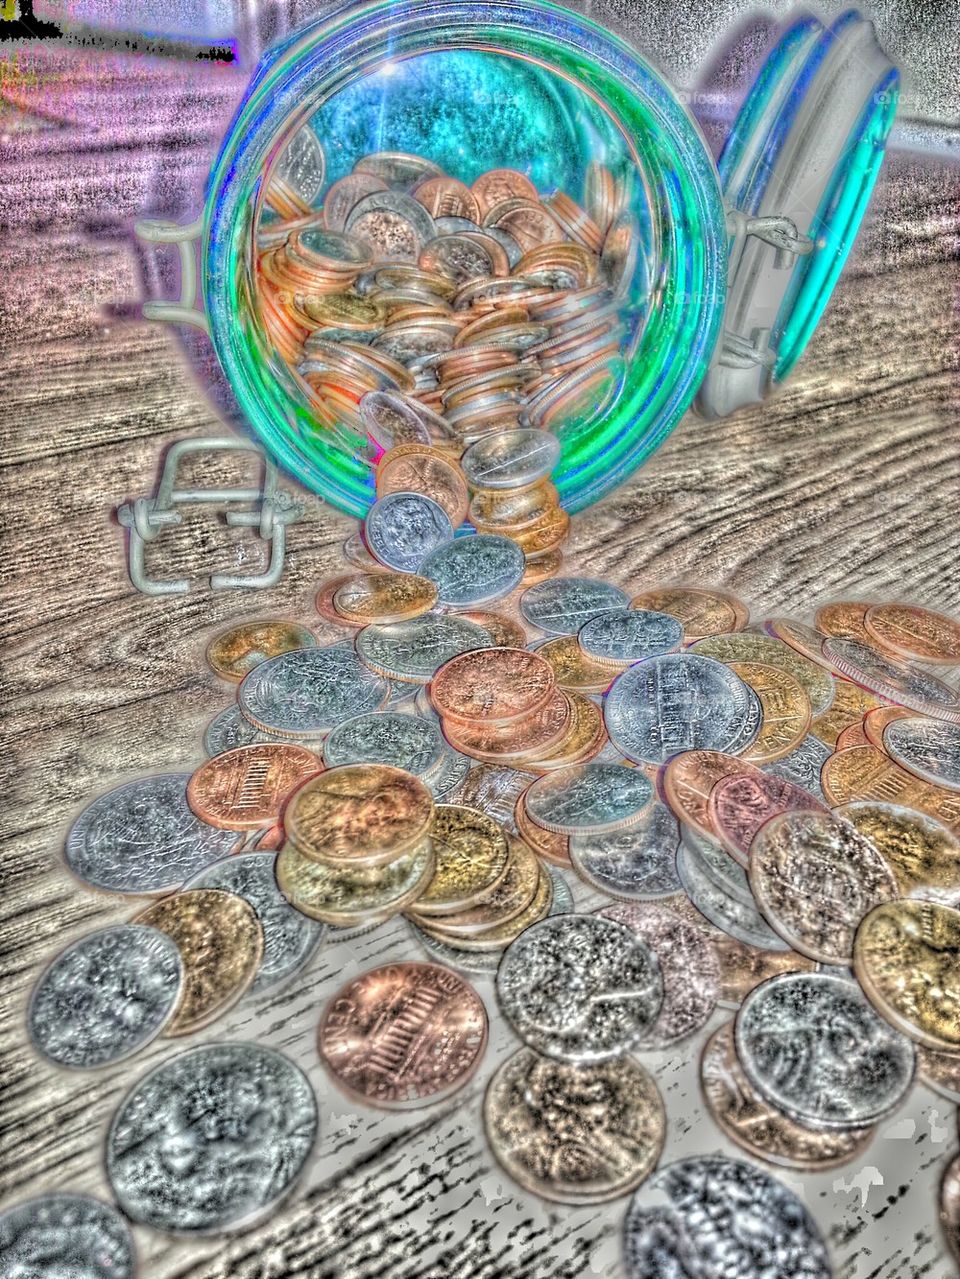 jar of money